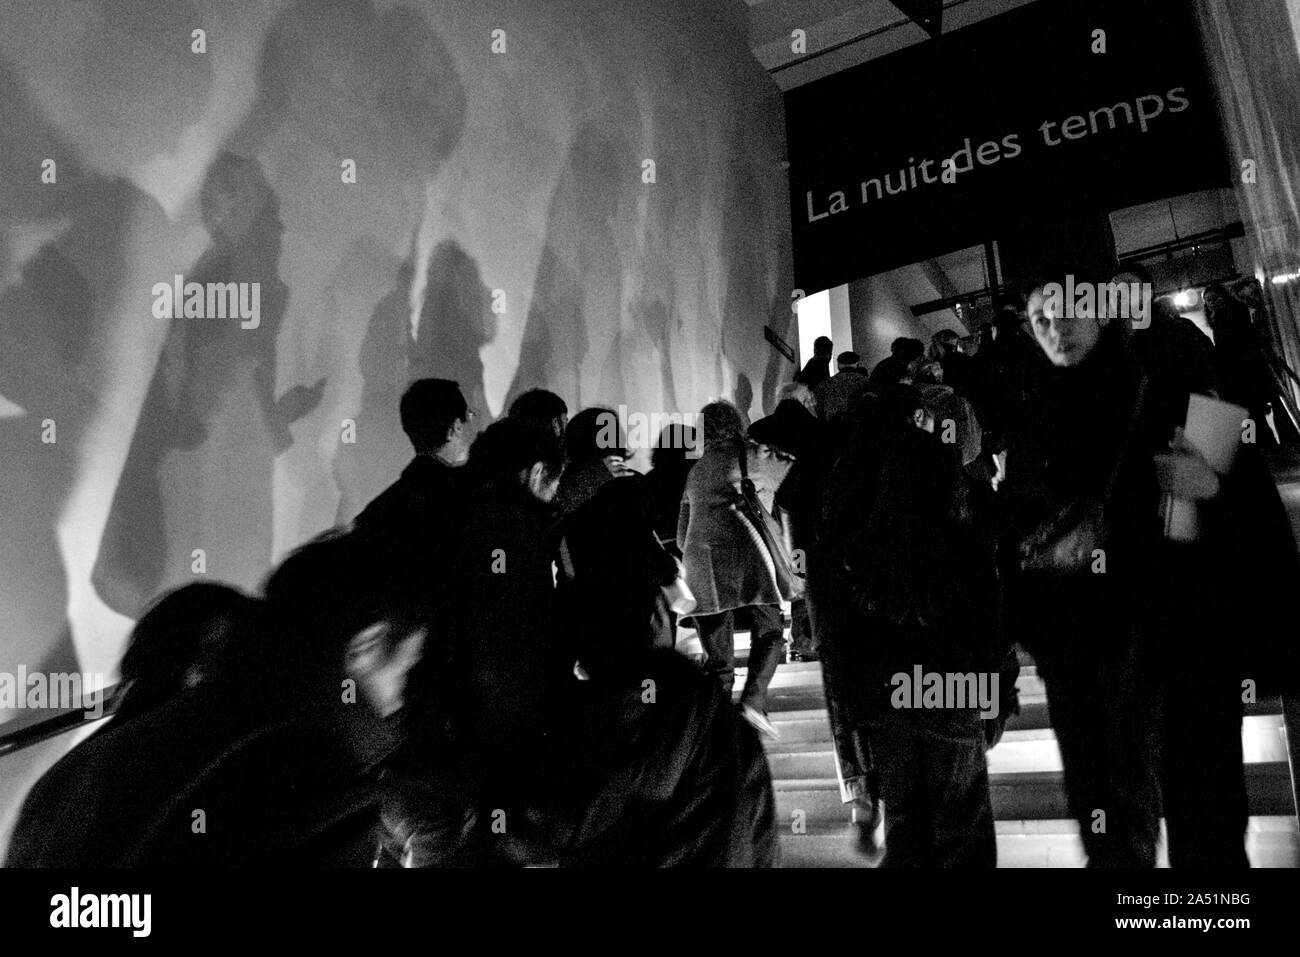 PARIS MUSEE DE L'HOMME 'LA NUIT DES TEMPS' - SHADOWS ON THE WALL - PARIS MUSEUM - ' NIGHT OF THE TIME' PARISIAN - STEPS - PARIS PHOTOGRAPHY © Frédéric BEAUMONT Stock Photo